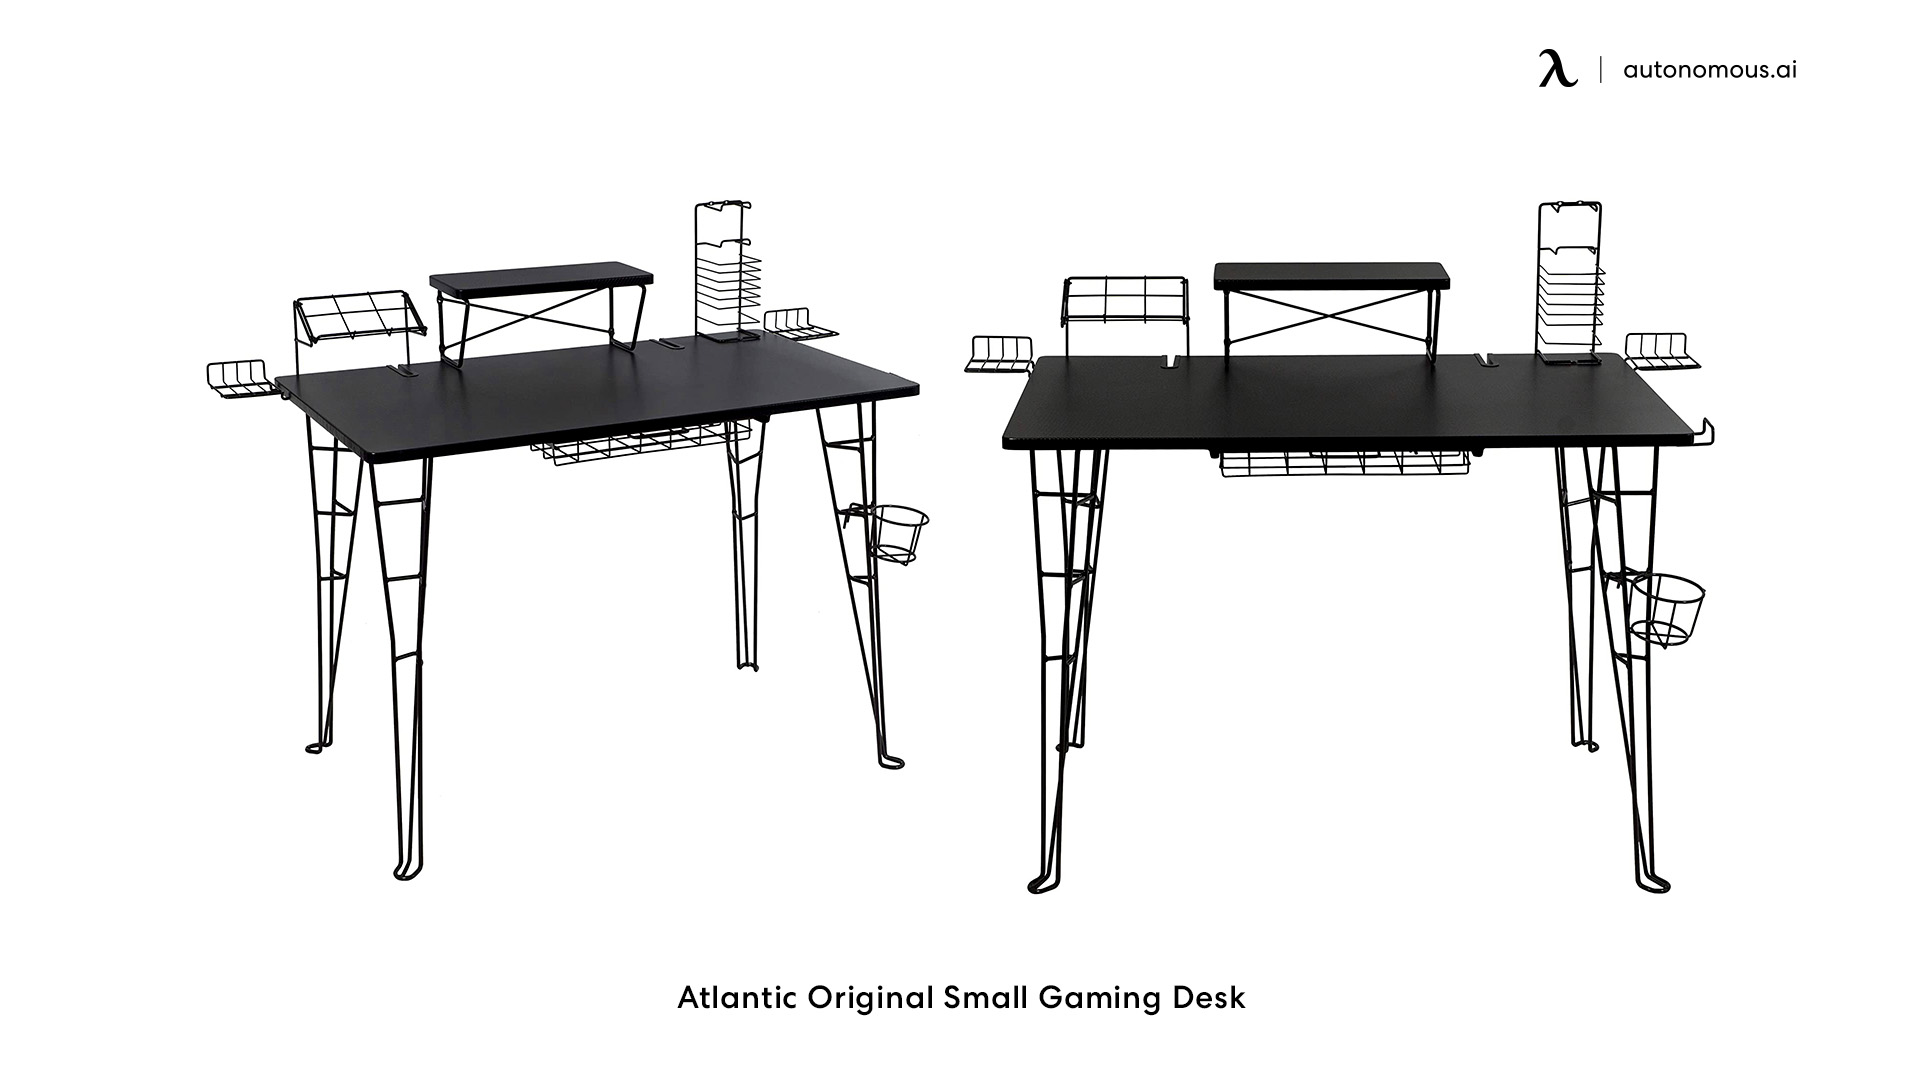 Atlantic Original Small Gaming Desk